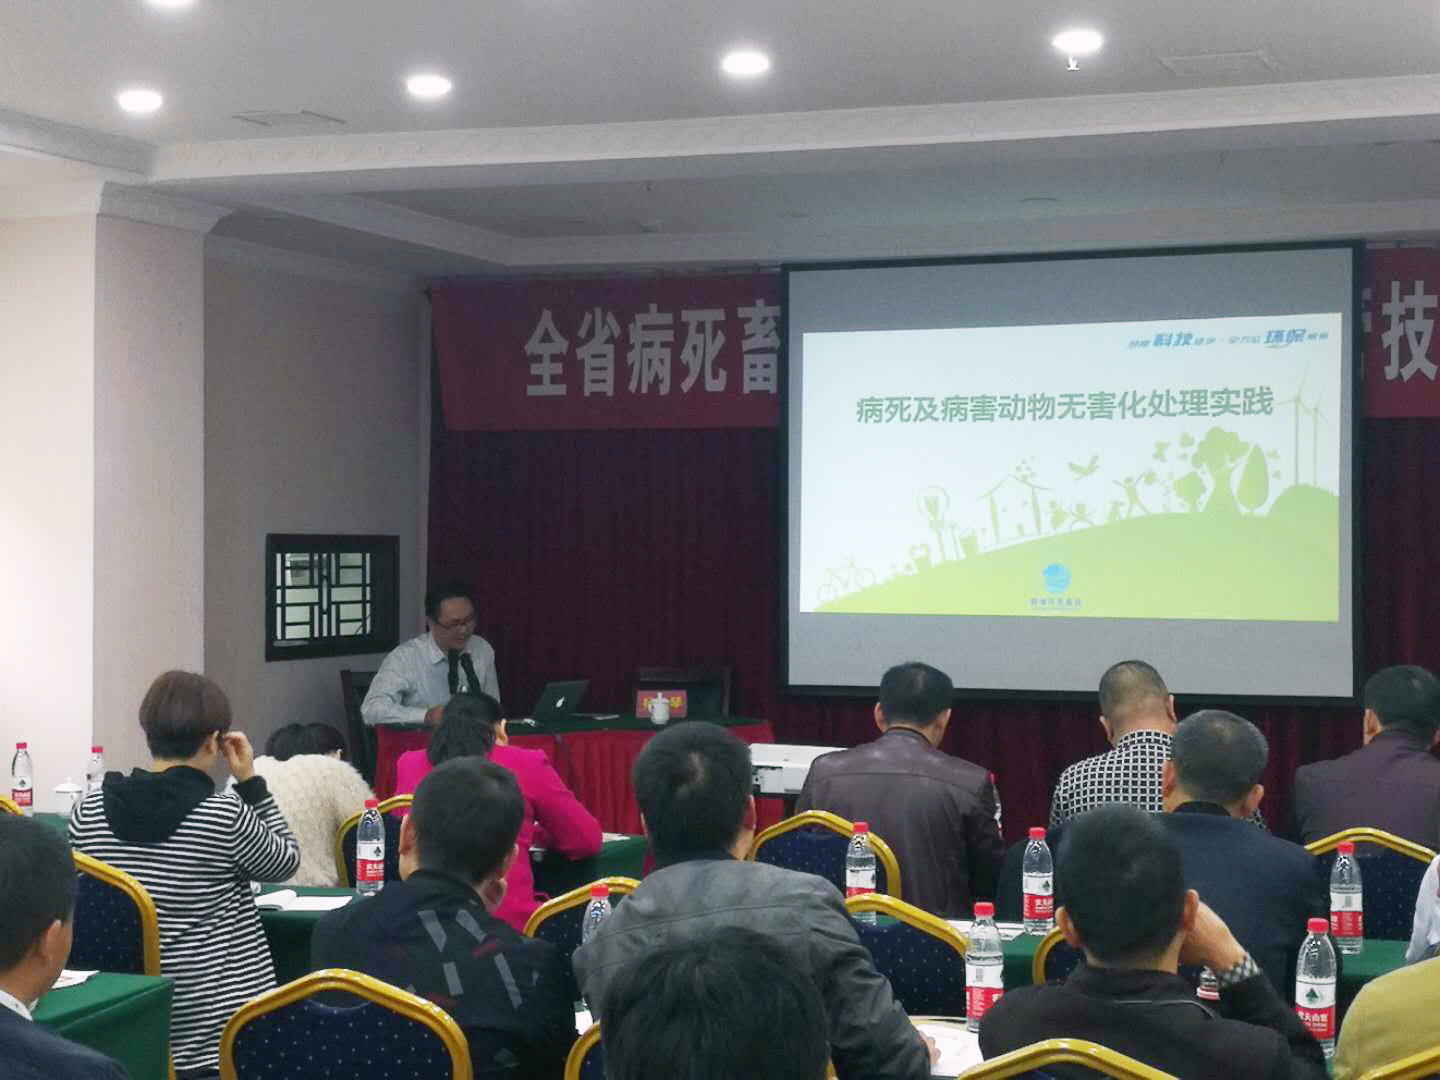 集团研发中心技术副总监刘瑜工程师为参会人员做分享